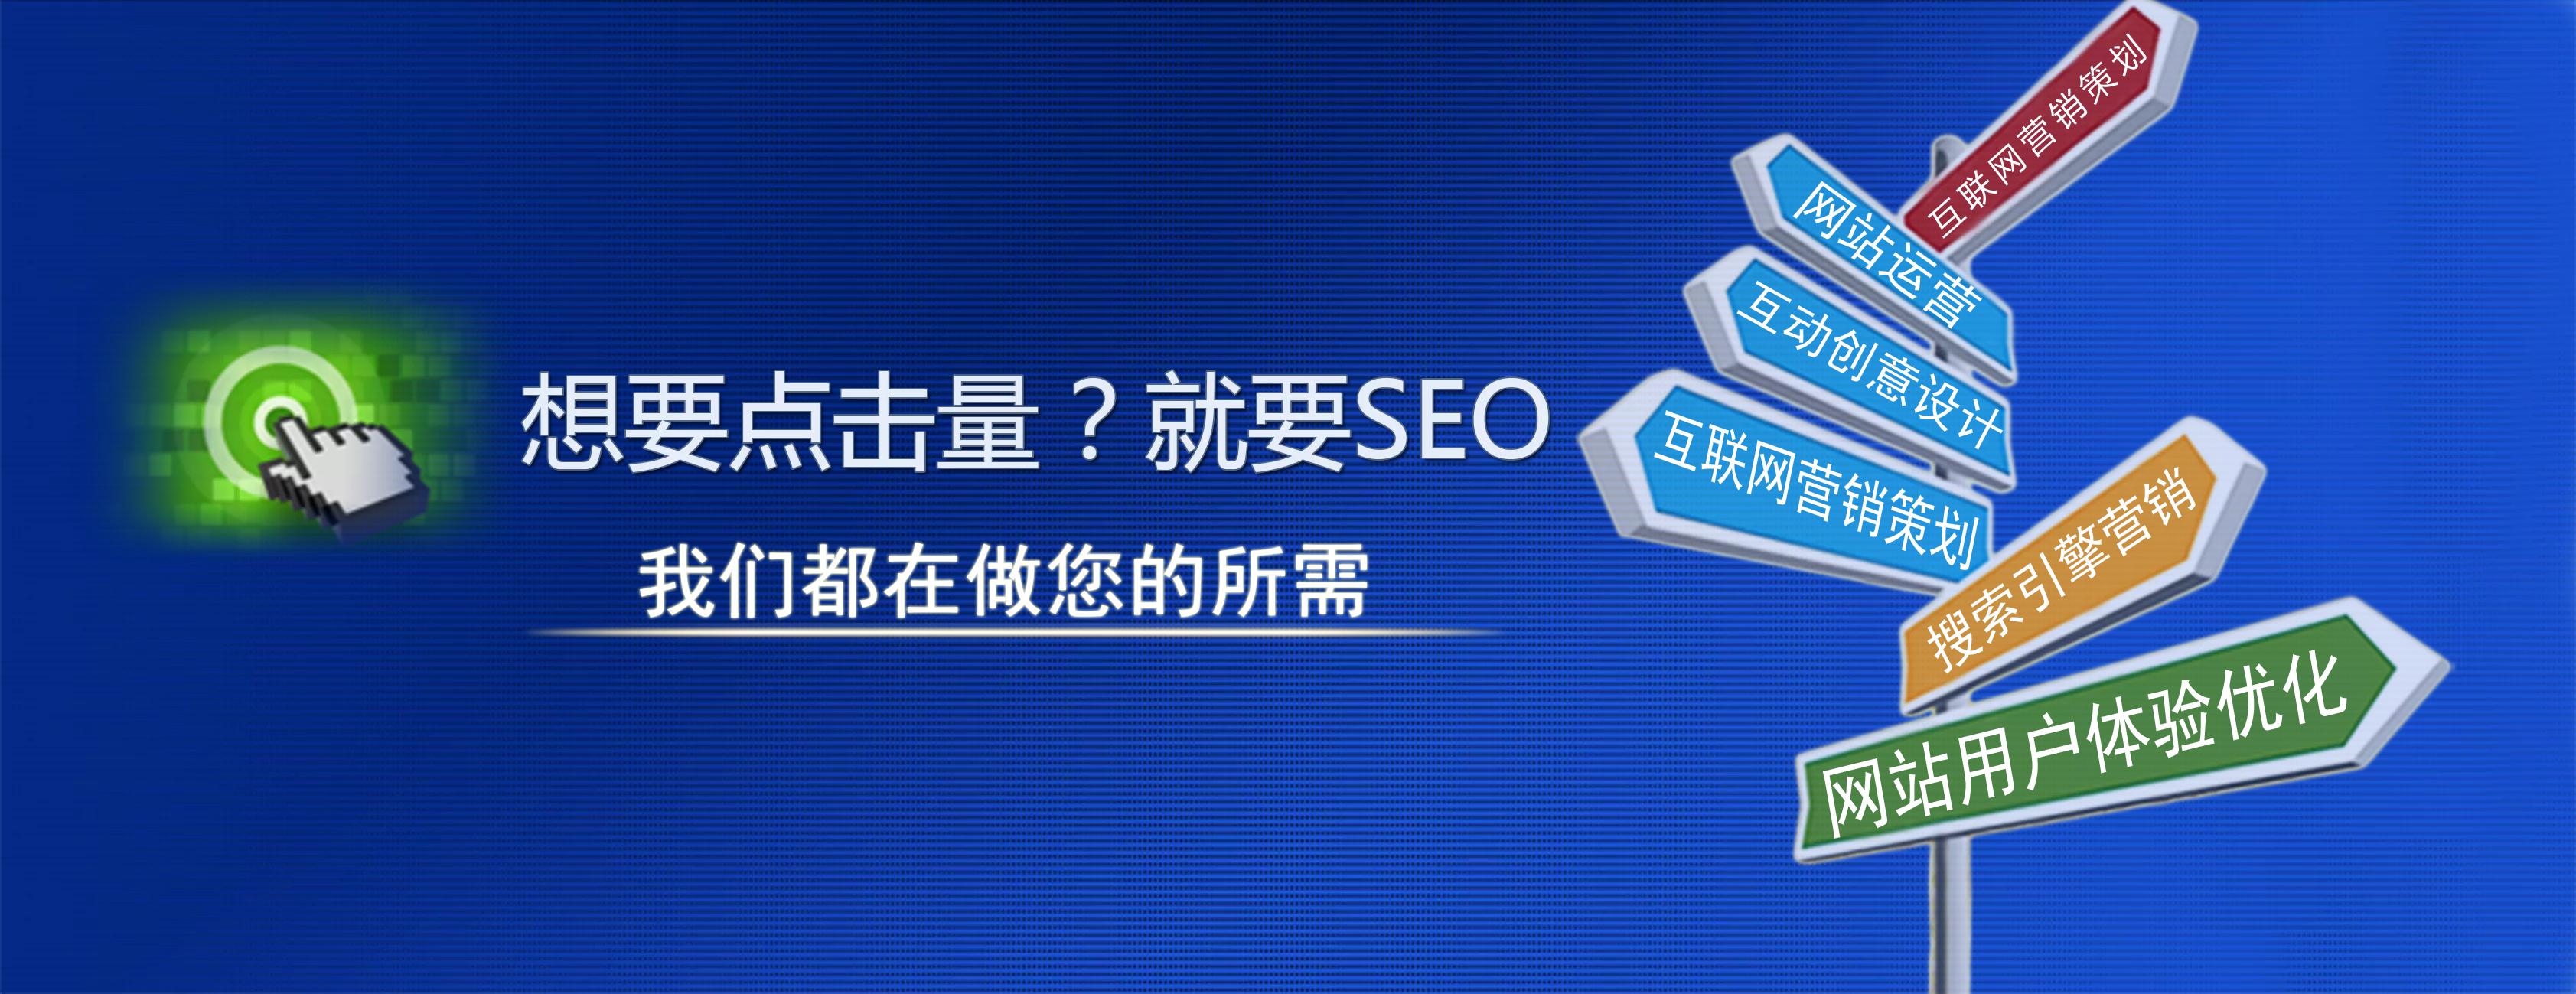 企业网站为什么要做seo推广呢?对企业有什么好处